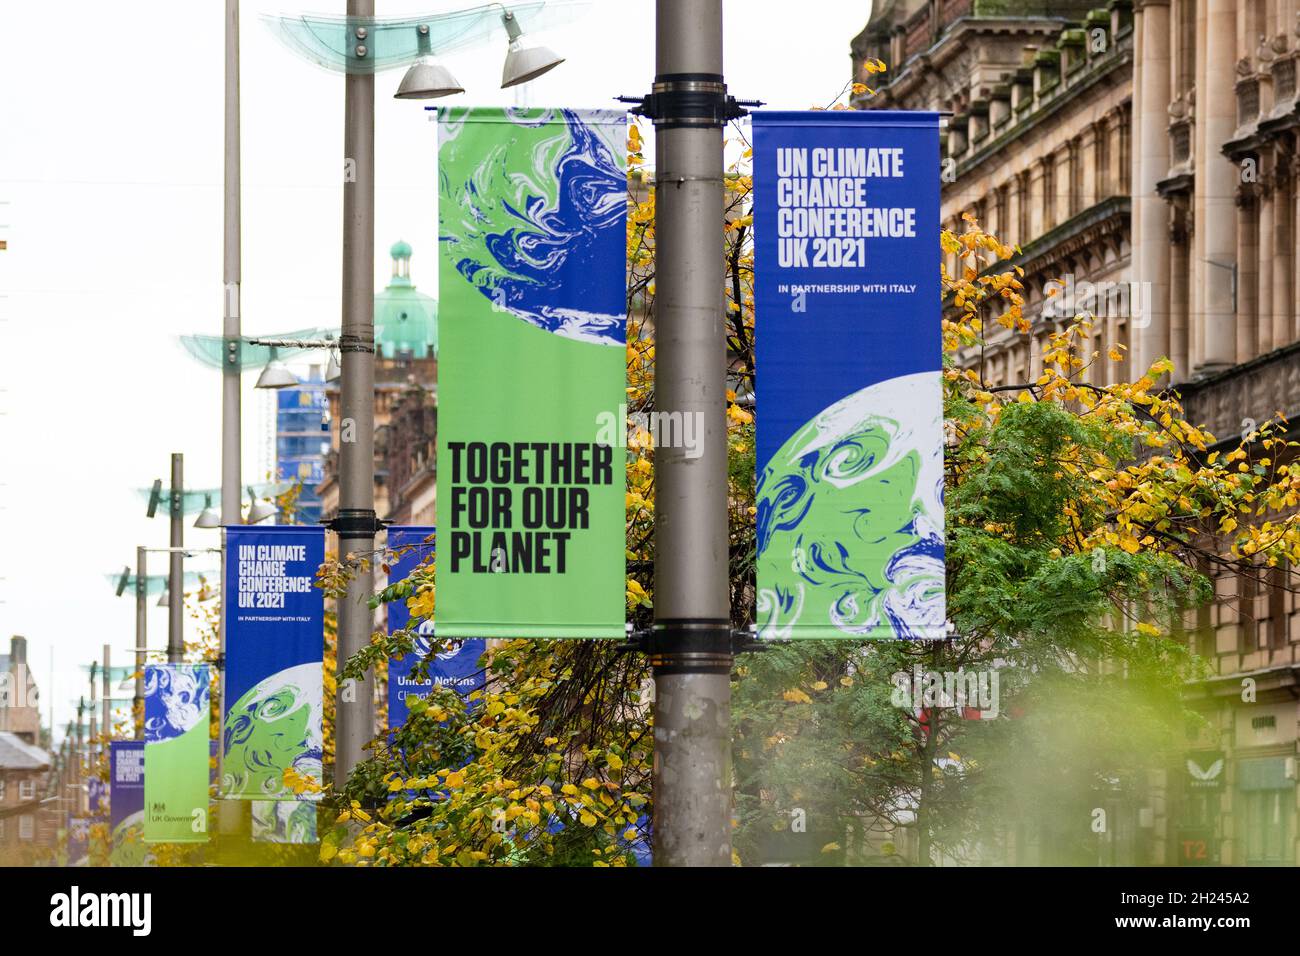 Bannières de la COP26 pour la Conférence des Nations Unies sur les changements climatiques, Glasgow, Écosse, Royaume-Uni Banque D'Images